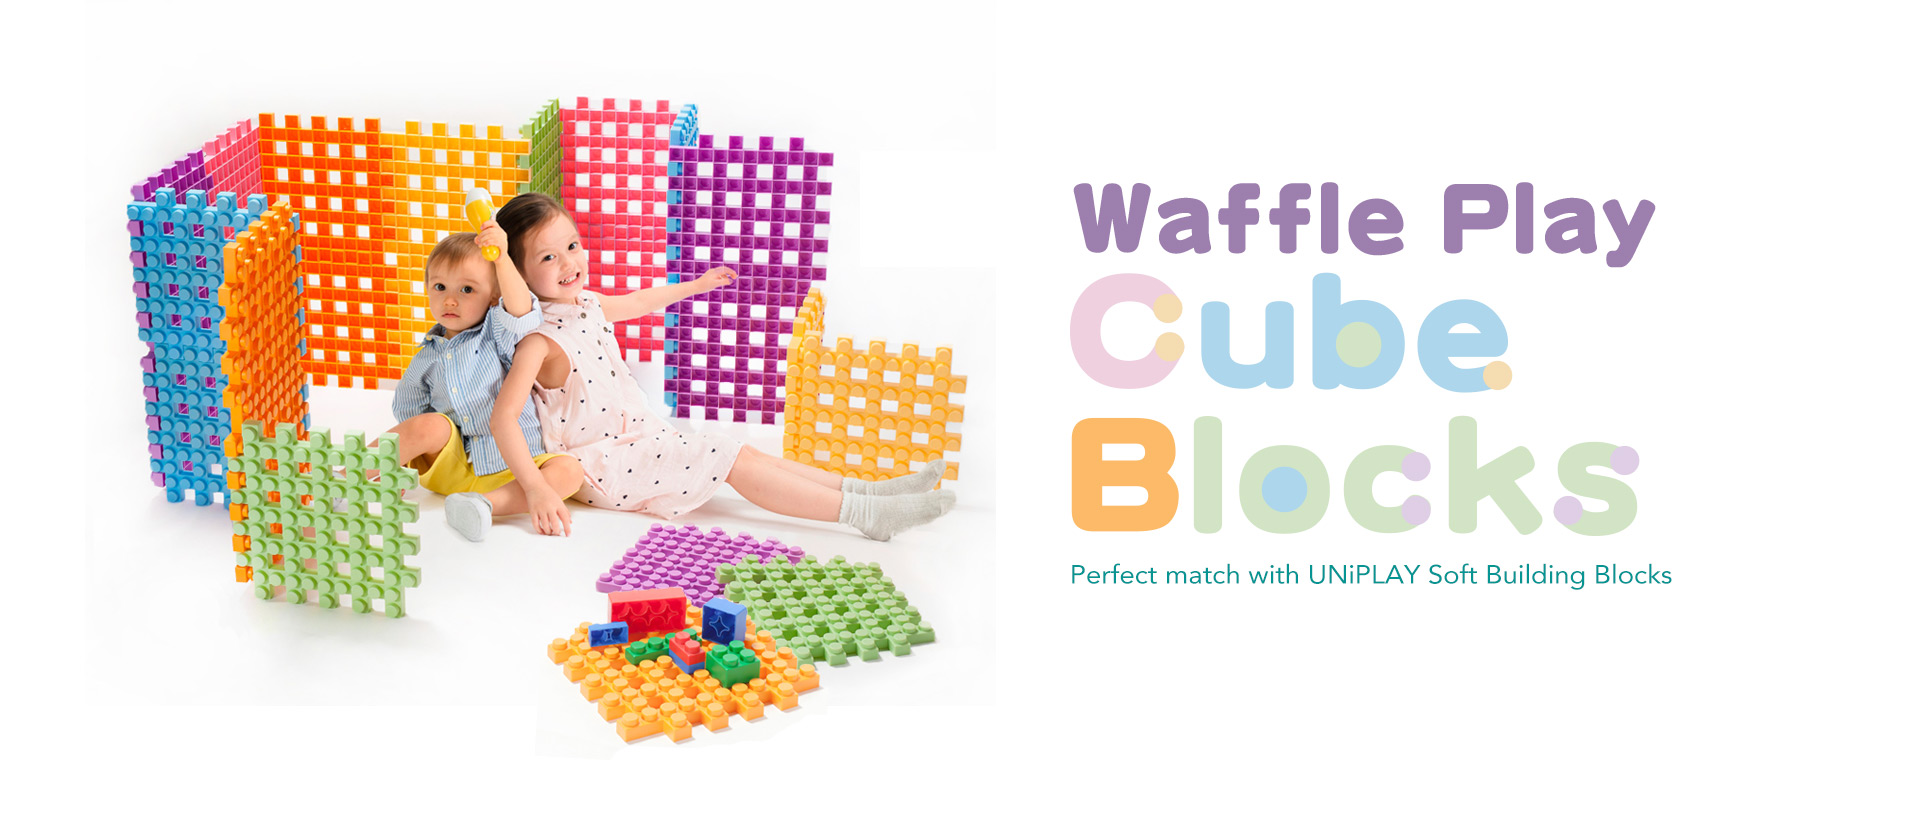 Waffle Play Cube Blocks